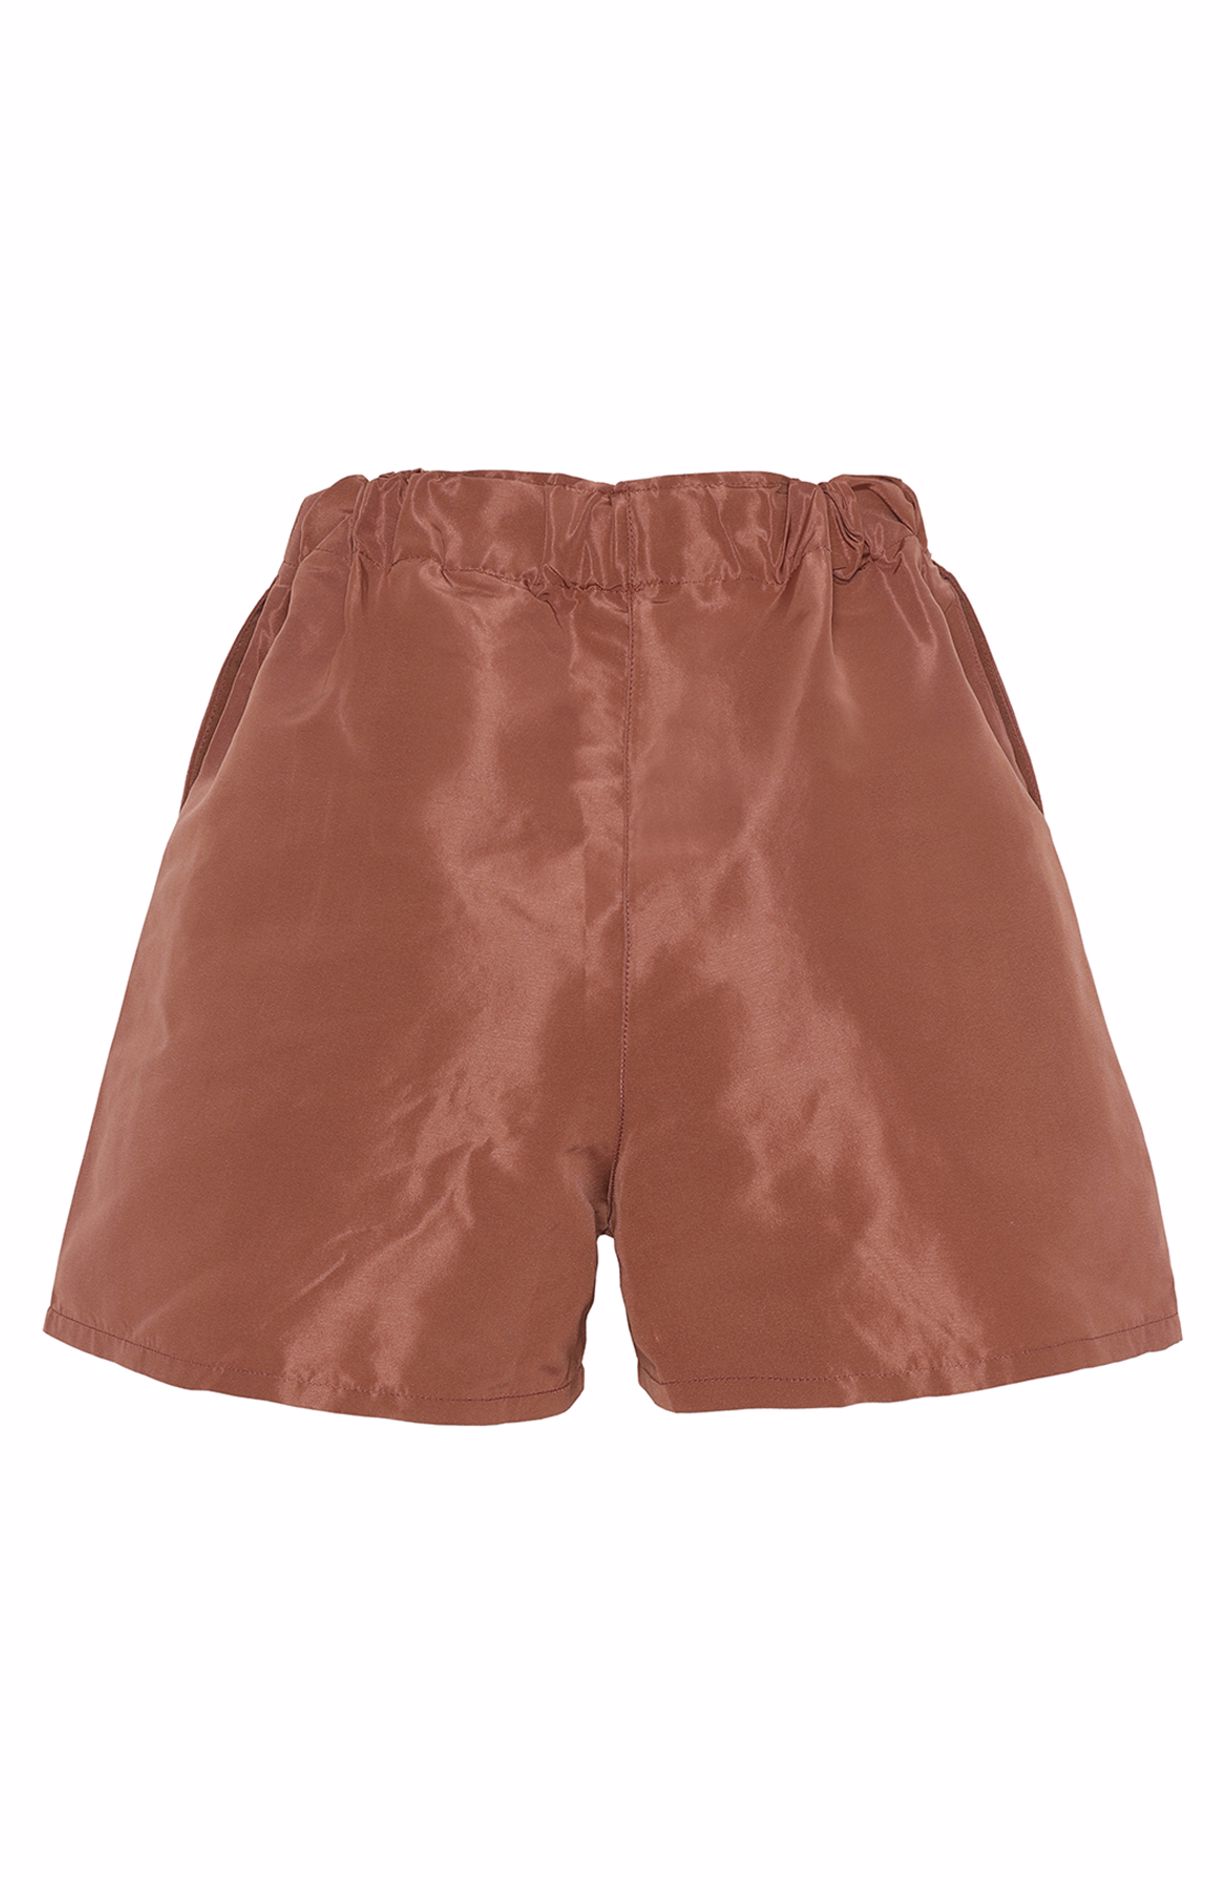 I Blame Lulu Twiggy Shorts - Terracotta